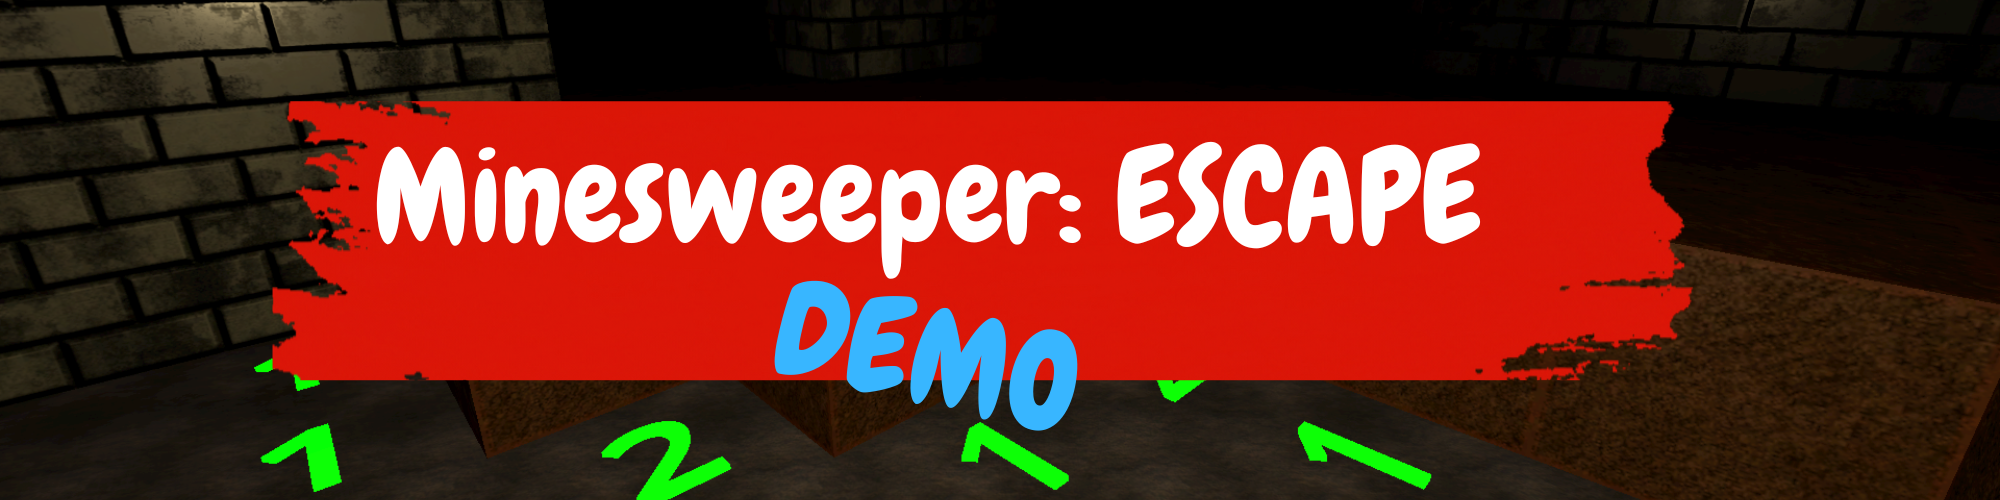 Minesweeper: ESCAPE (DEMO)